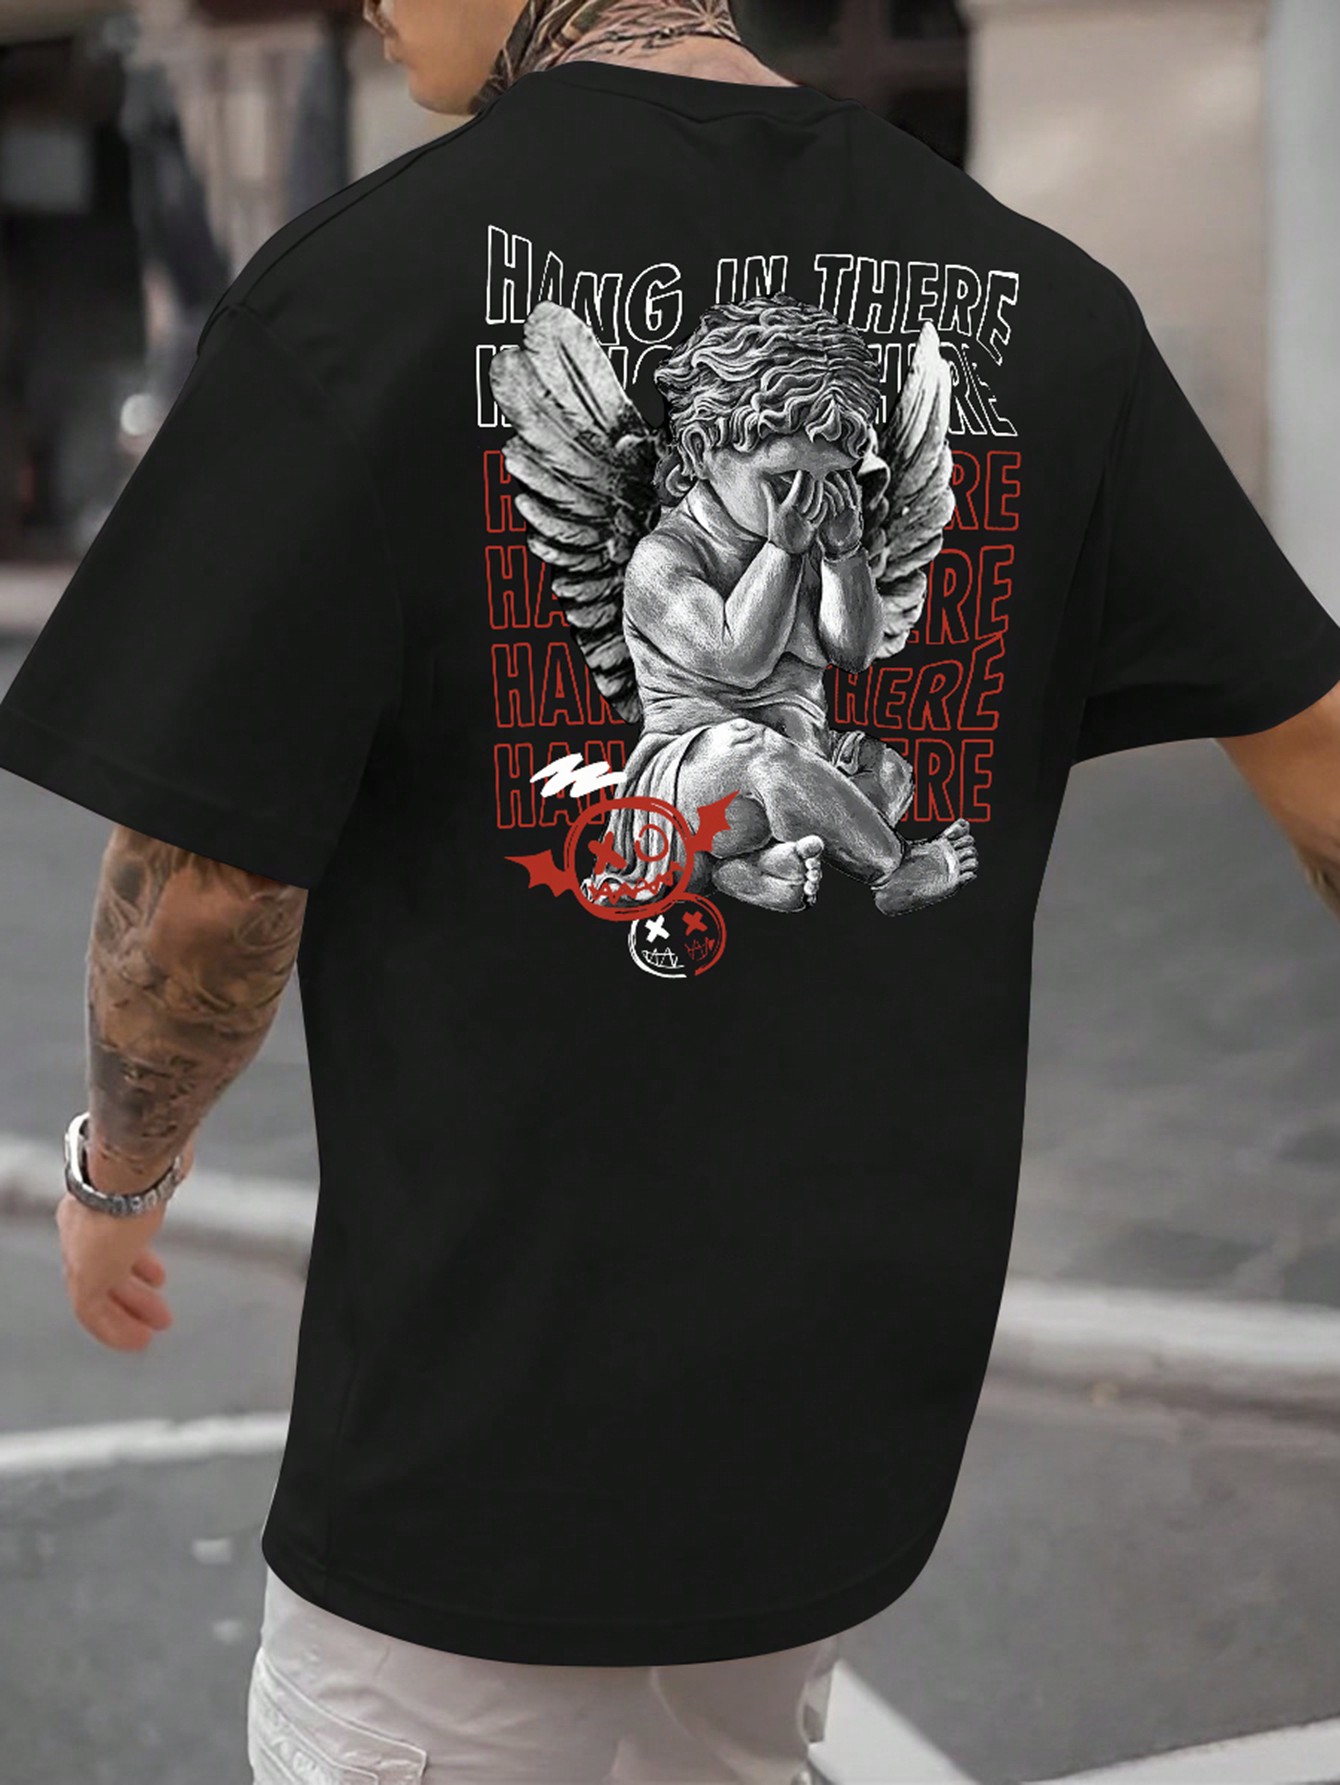 Мужская футболка больших размеров Manfinity EMRG с принтом ангела и слоганом, черный